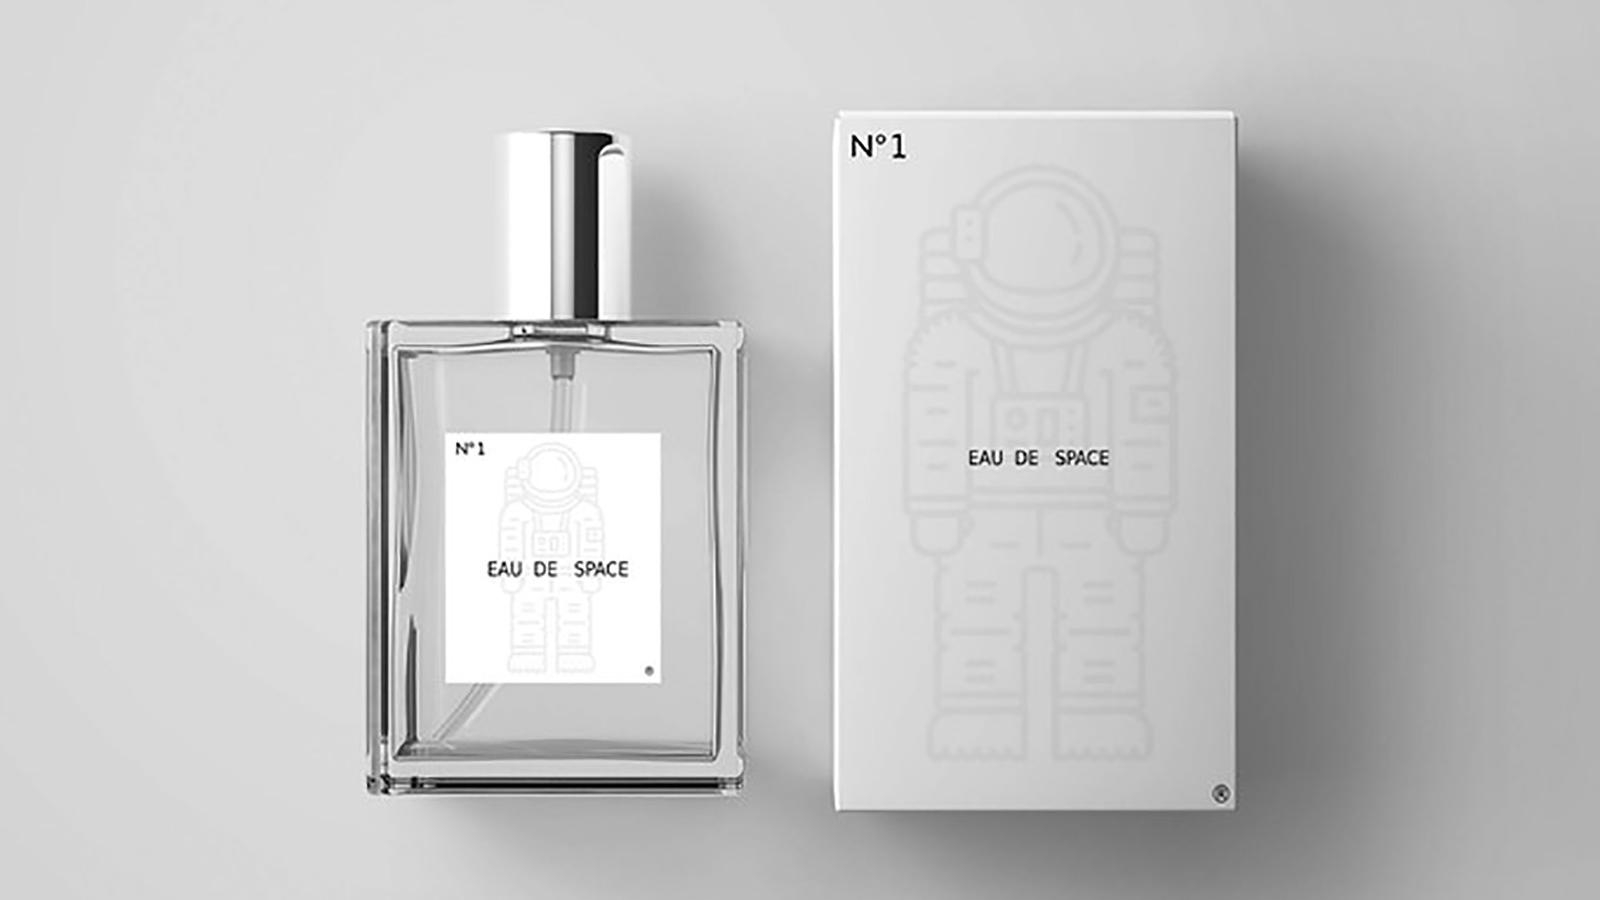 Кулон, который не разрешает прикасаться к лицу и парфюм с запахом космоса: изобретения NASA - фото №4